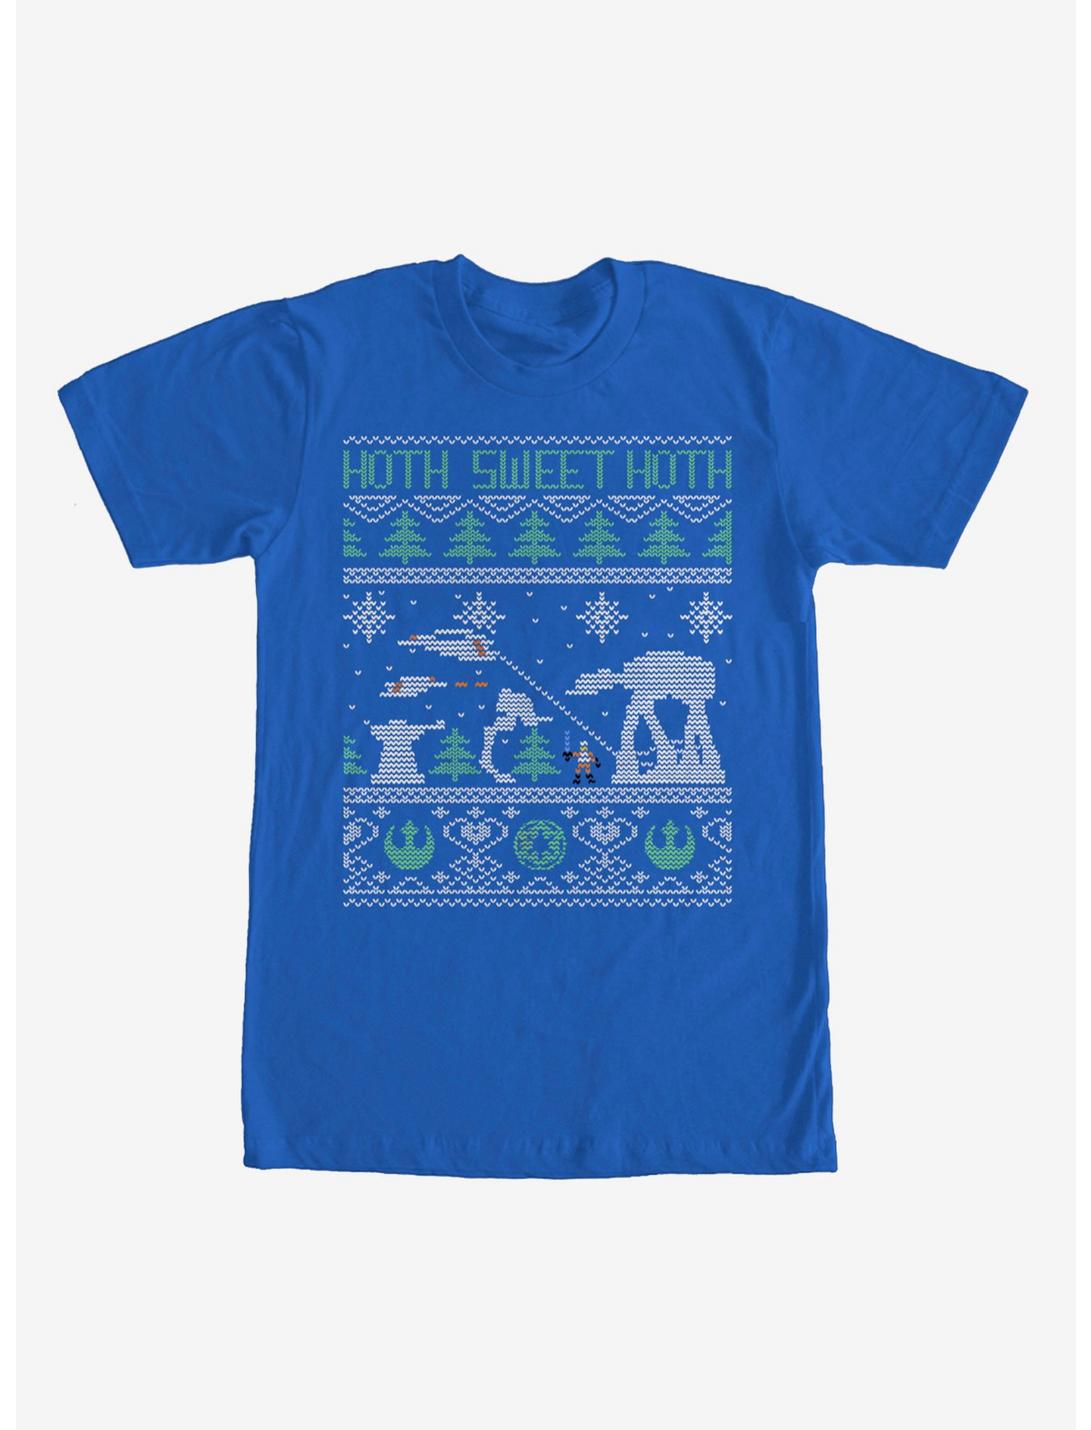 Star Wars Hoth Sweet Hoth Ugly Christmas Sweater T-Shirt, ROYAL, hi-res